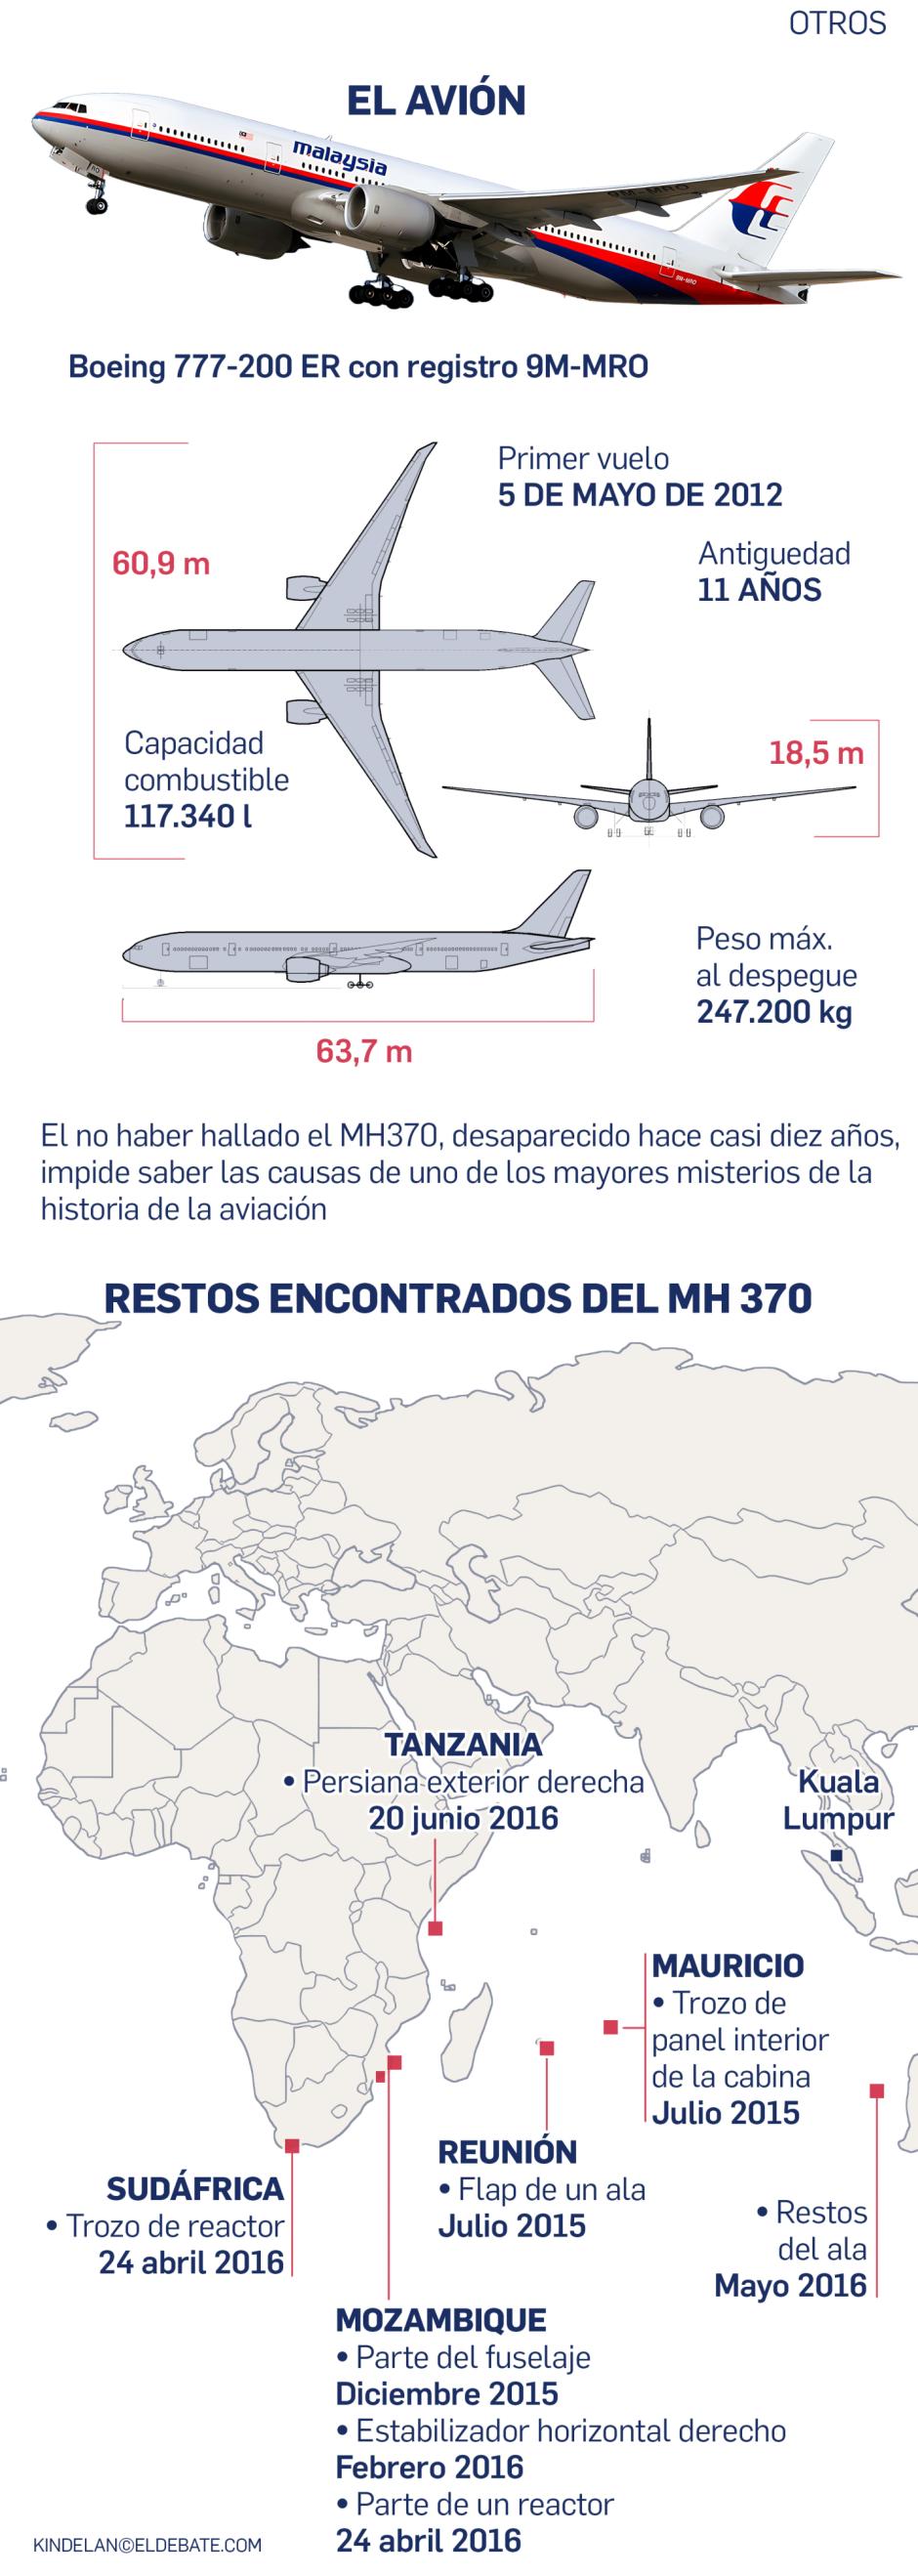 MH370 info 2 ok ok